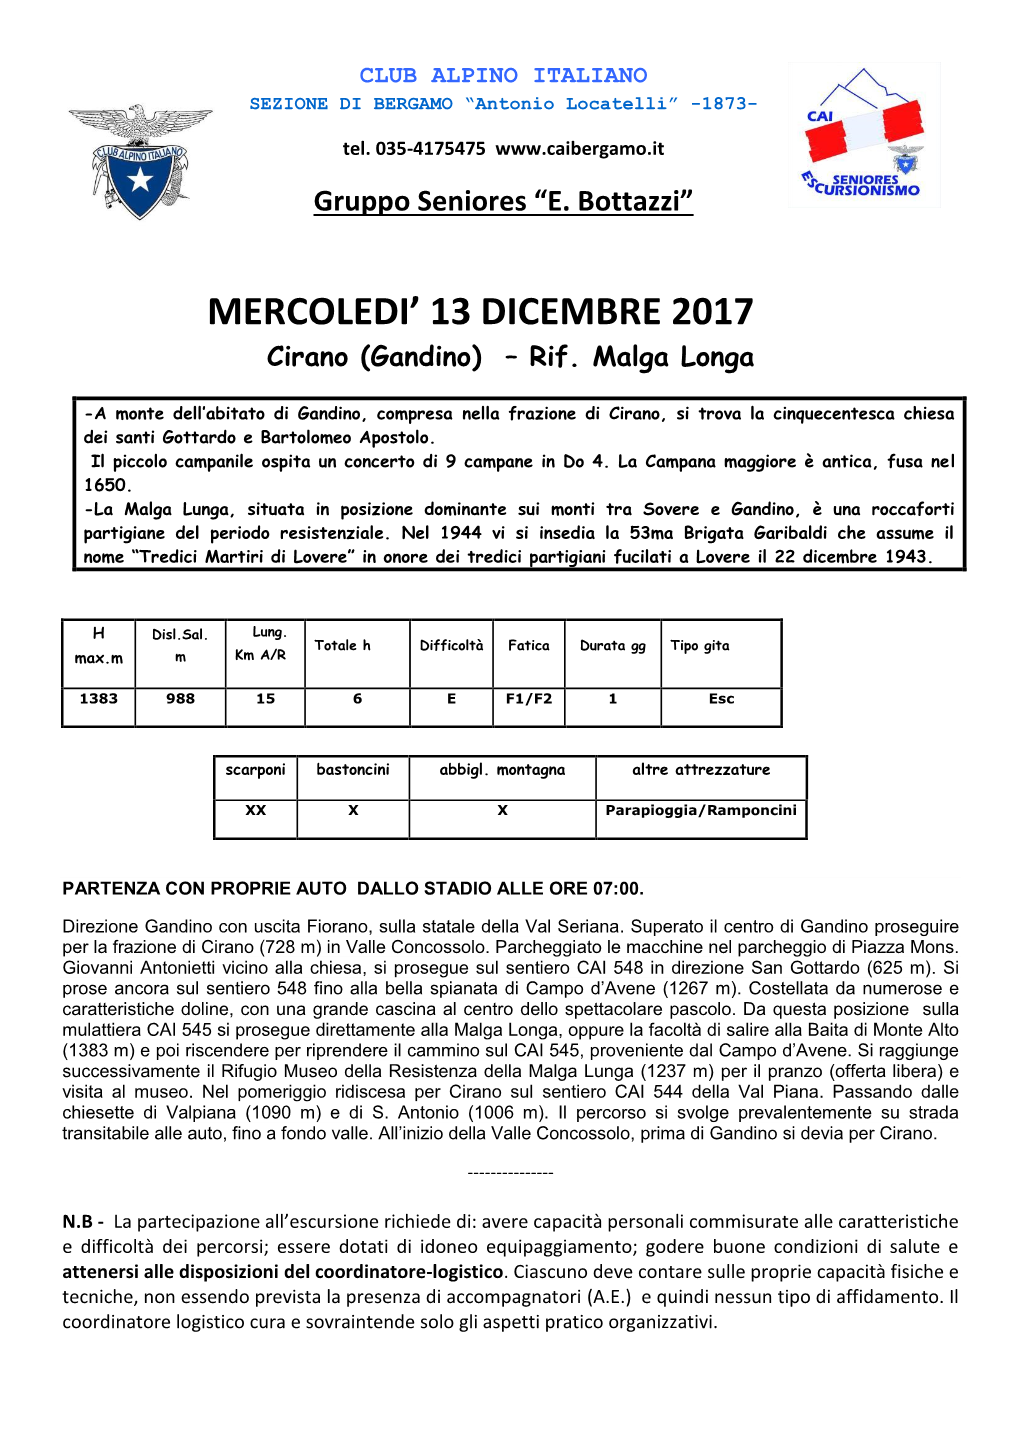 MERCOLEDI' 13 DICEMBRE 2017 Cirano (Gandino